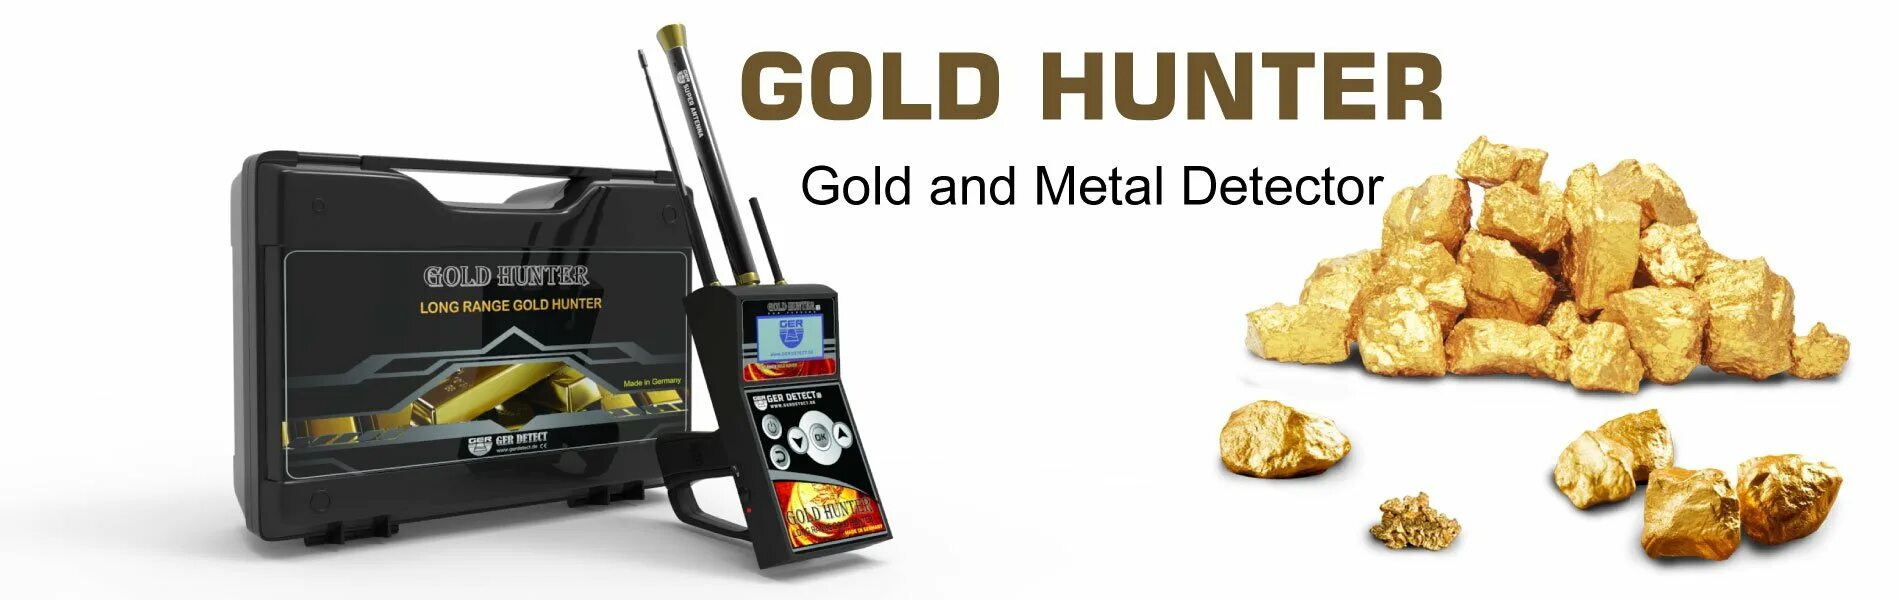 Long Ranger Gold металлоискатель. Gold Hunter b75. GH-20 металлоискатель Gold Hunter. Ger detect Gold Hunter комплектация. Голд хантер б